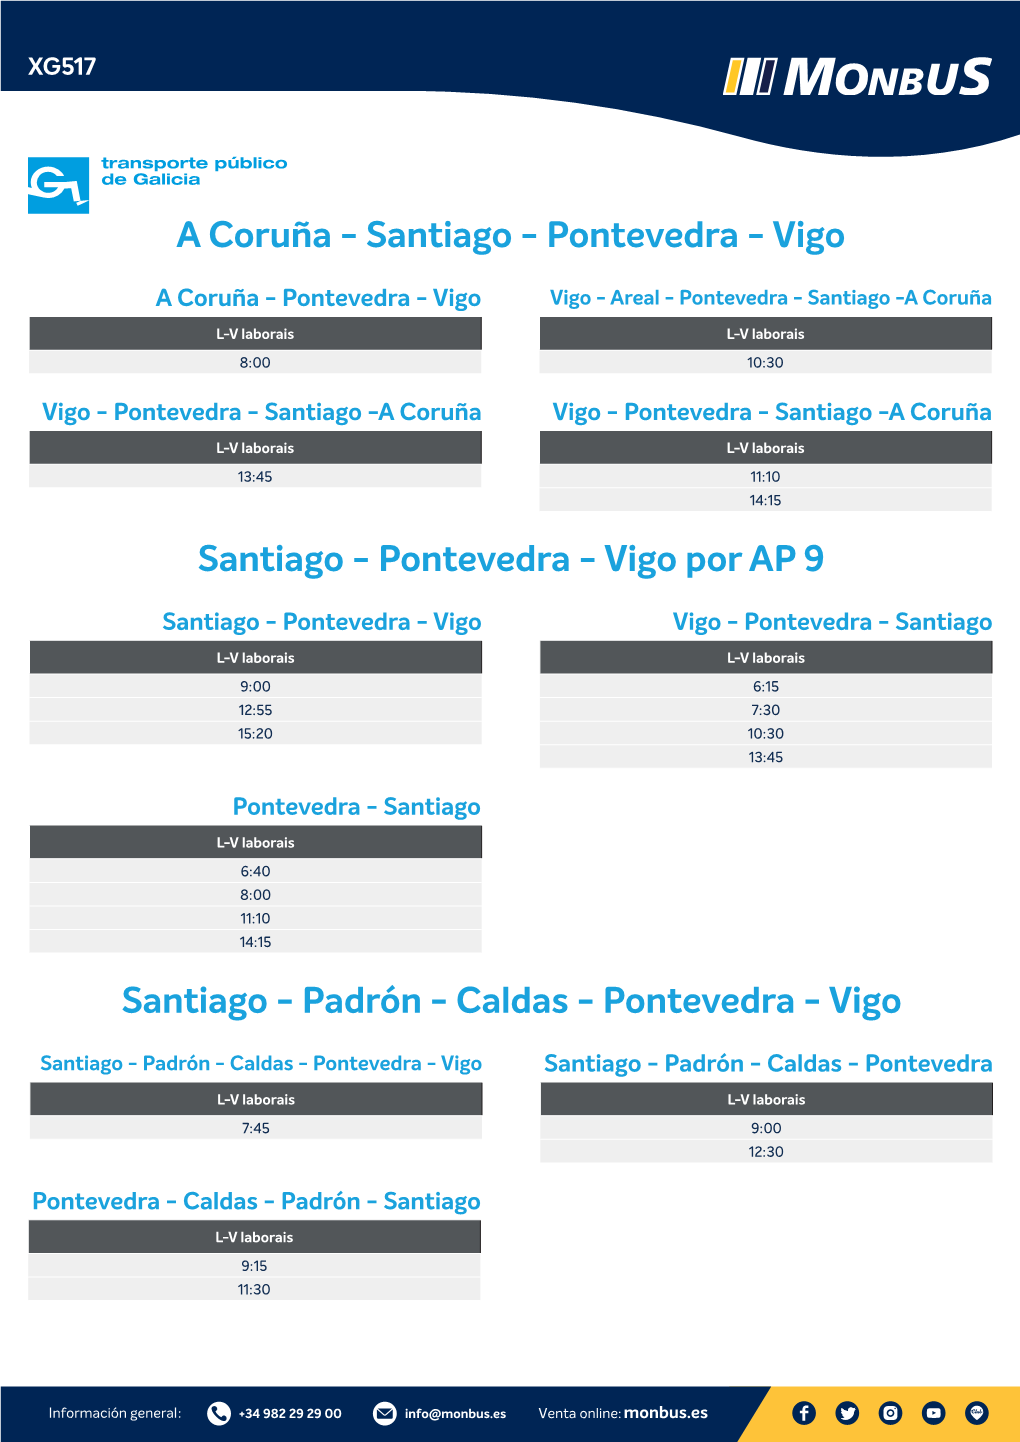 Pontevedra - Vigo